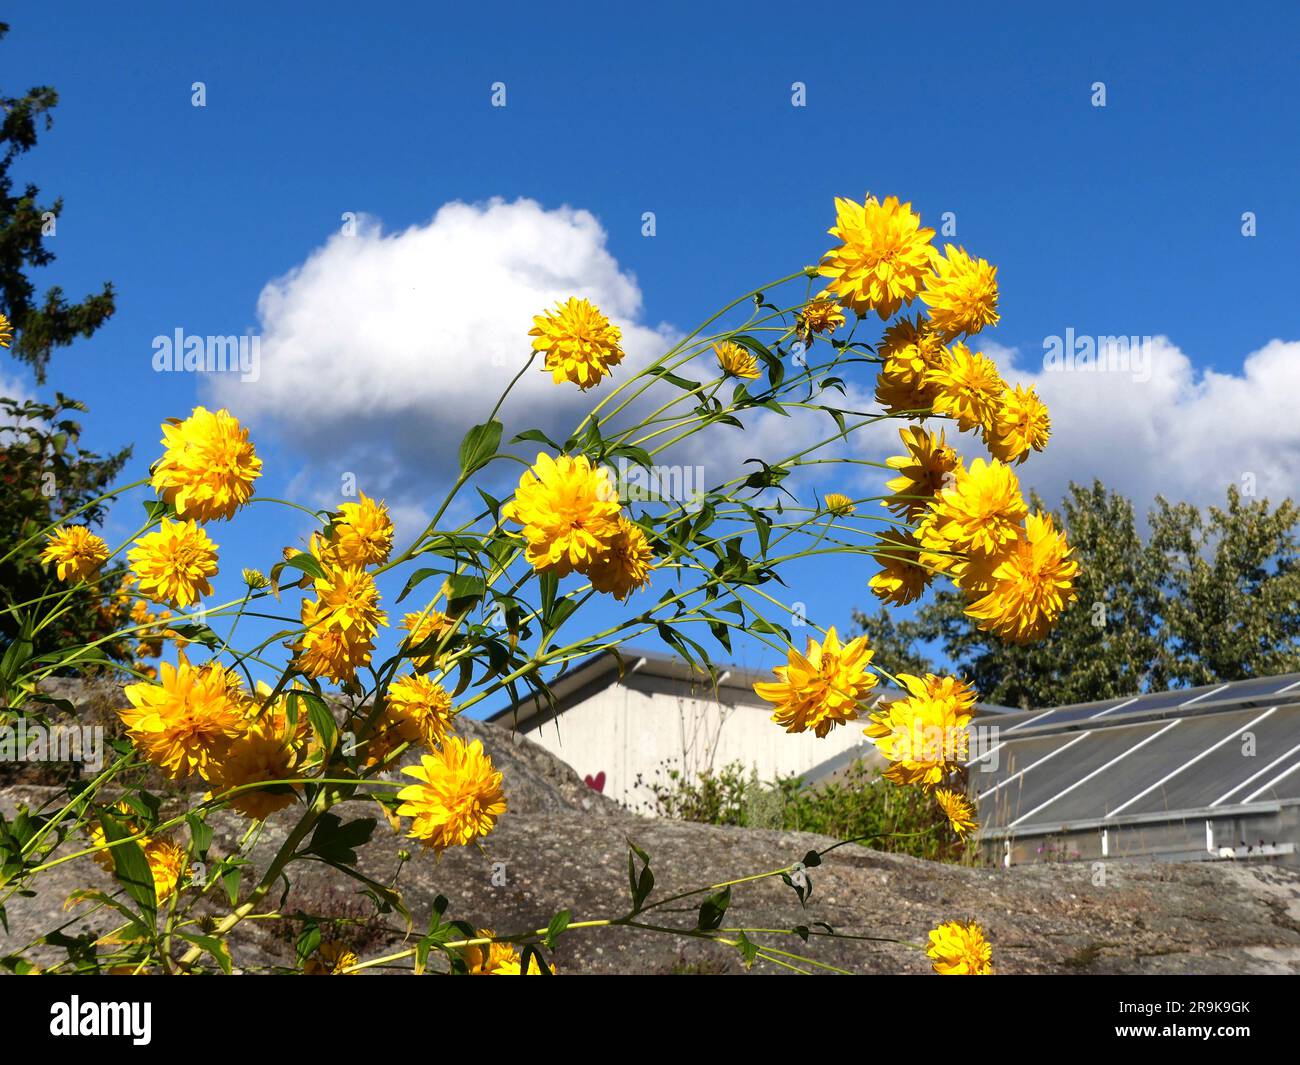 Autumn rudbeckia against blue sky Stock Photo